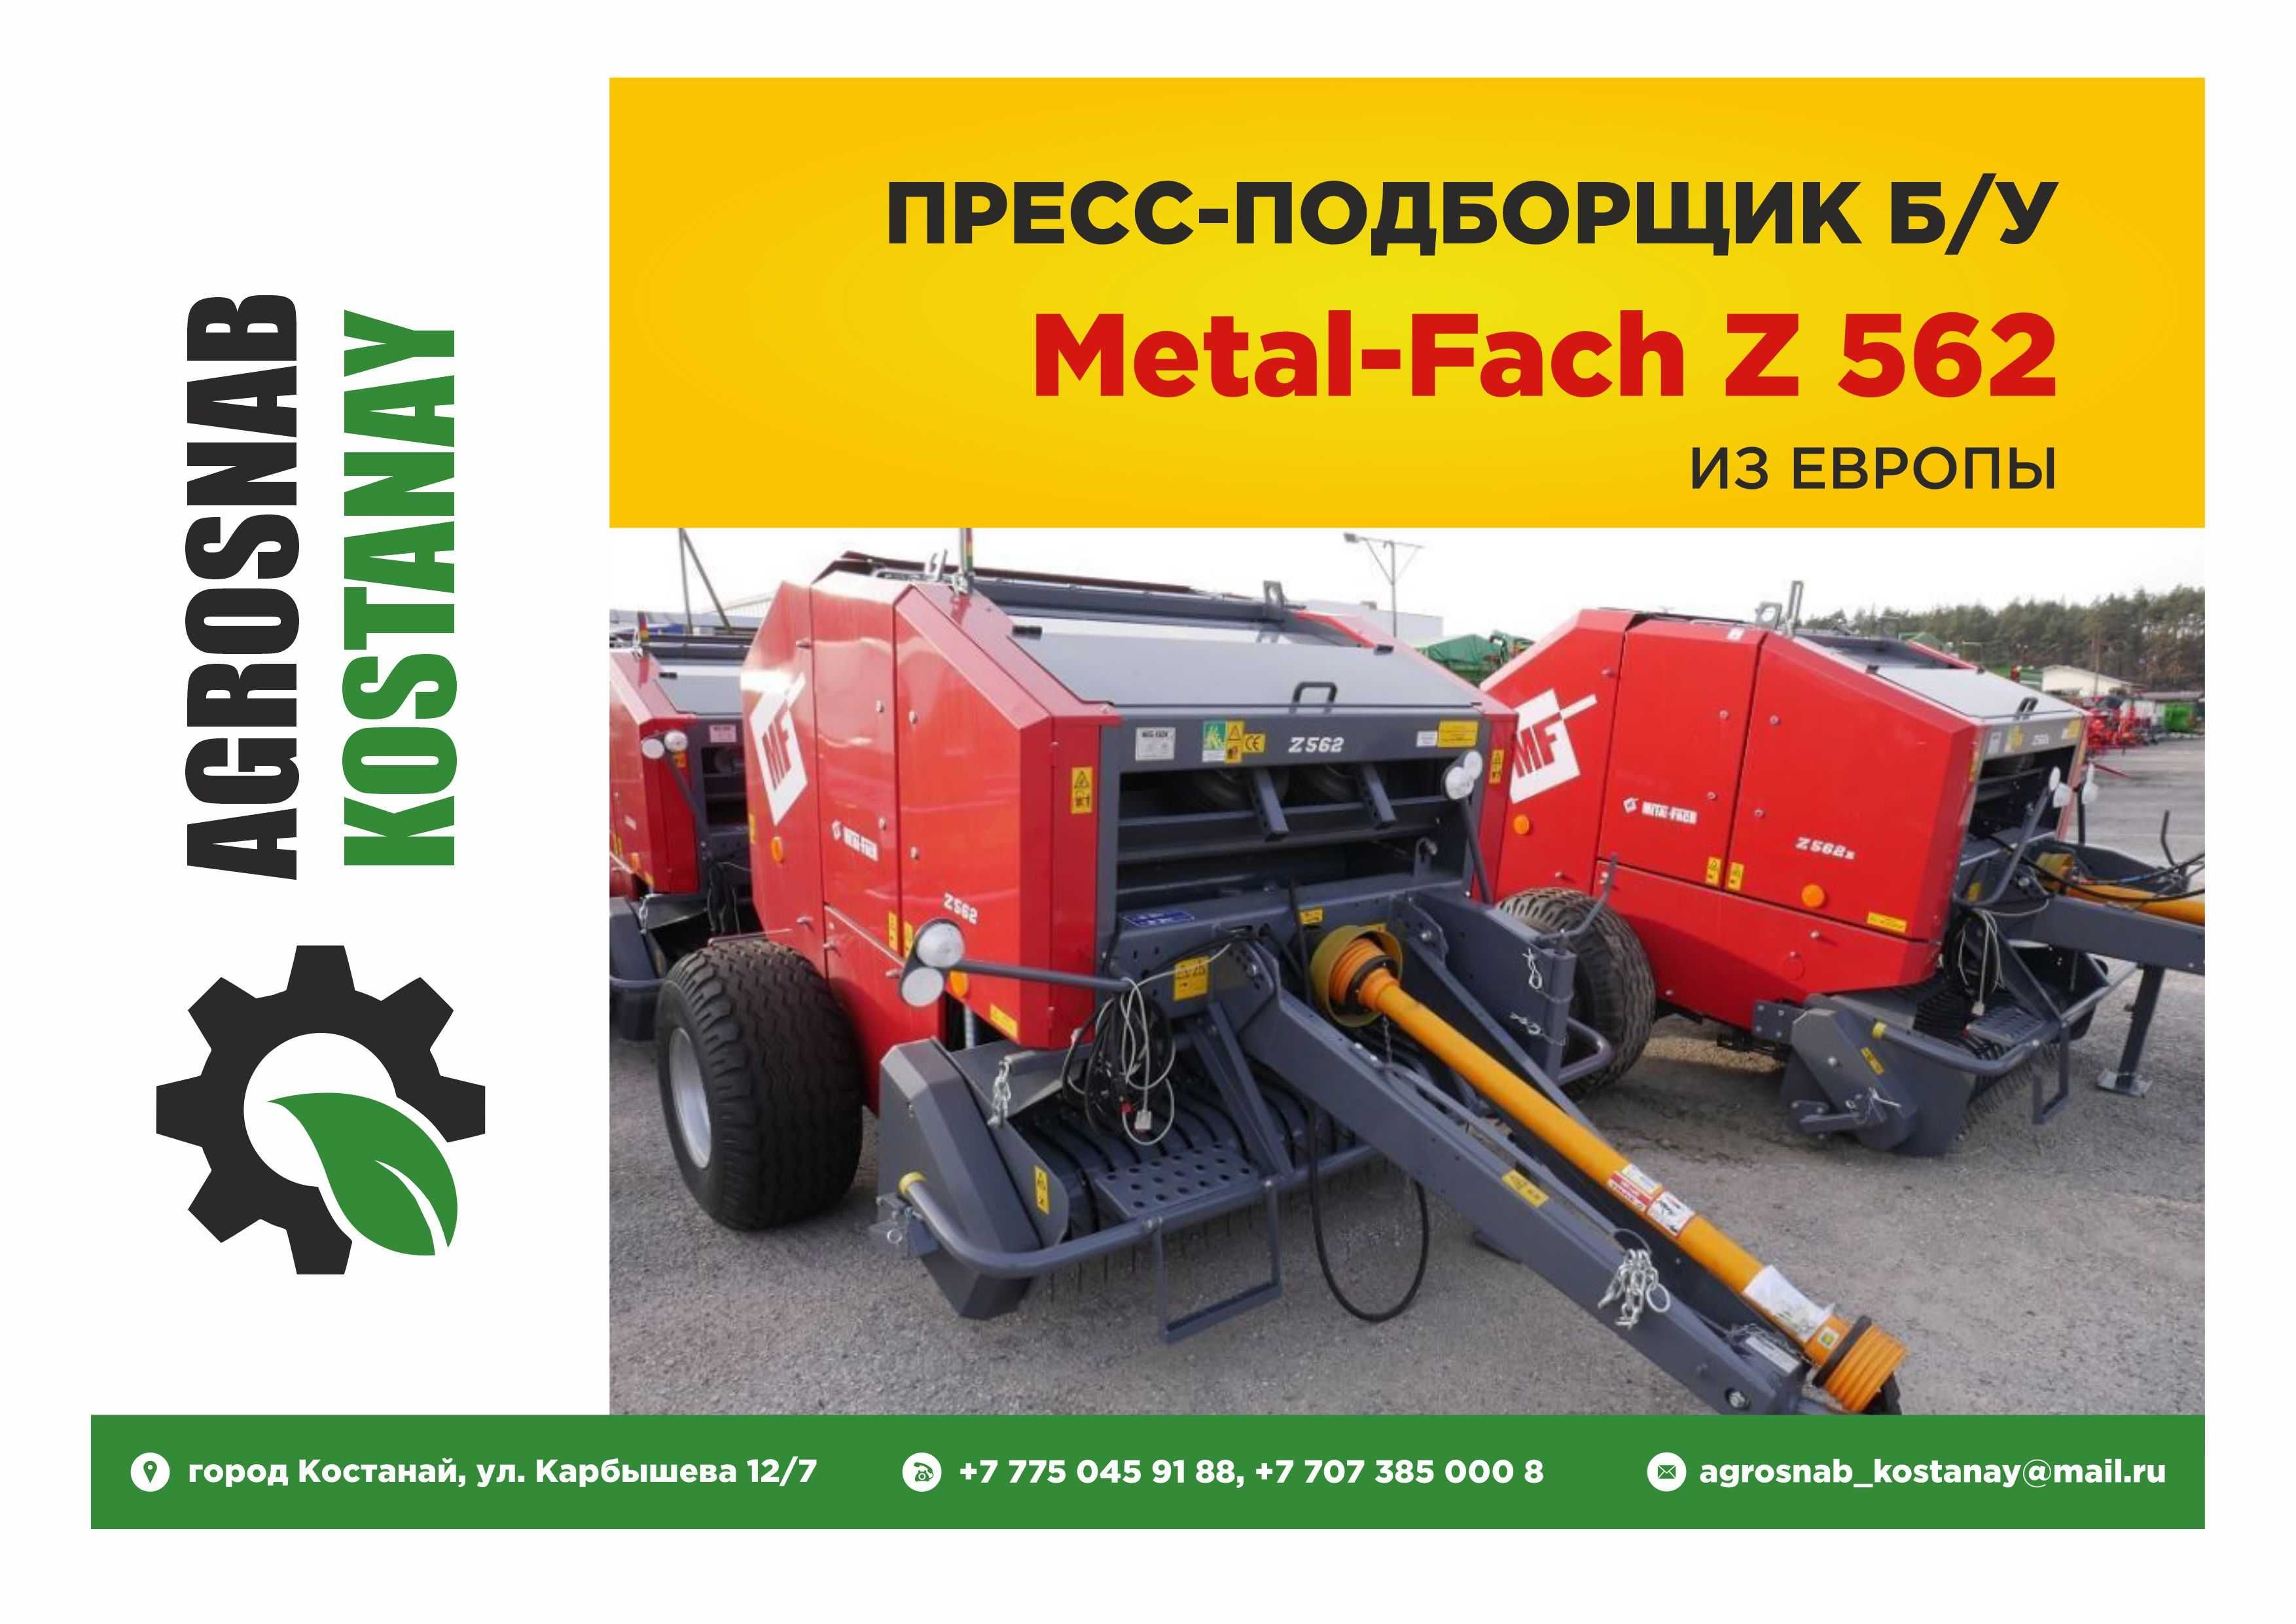 Пресс-подборщик Metal-Fach Z 562 б/у в Костанае: 3 800 000 тг .